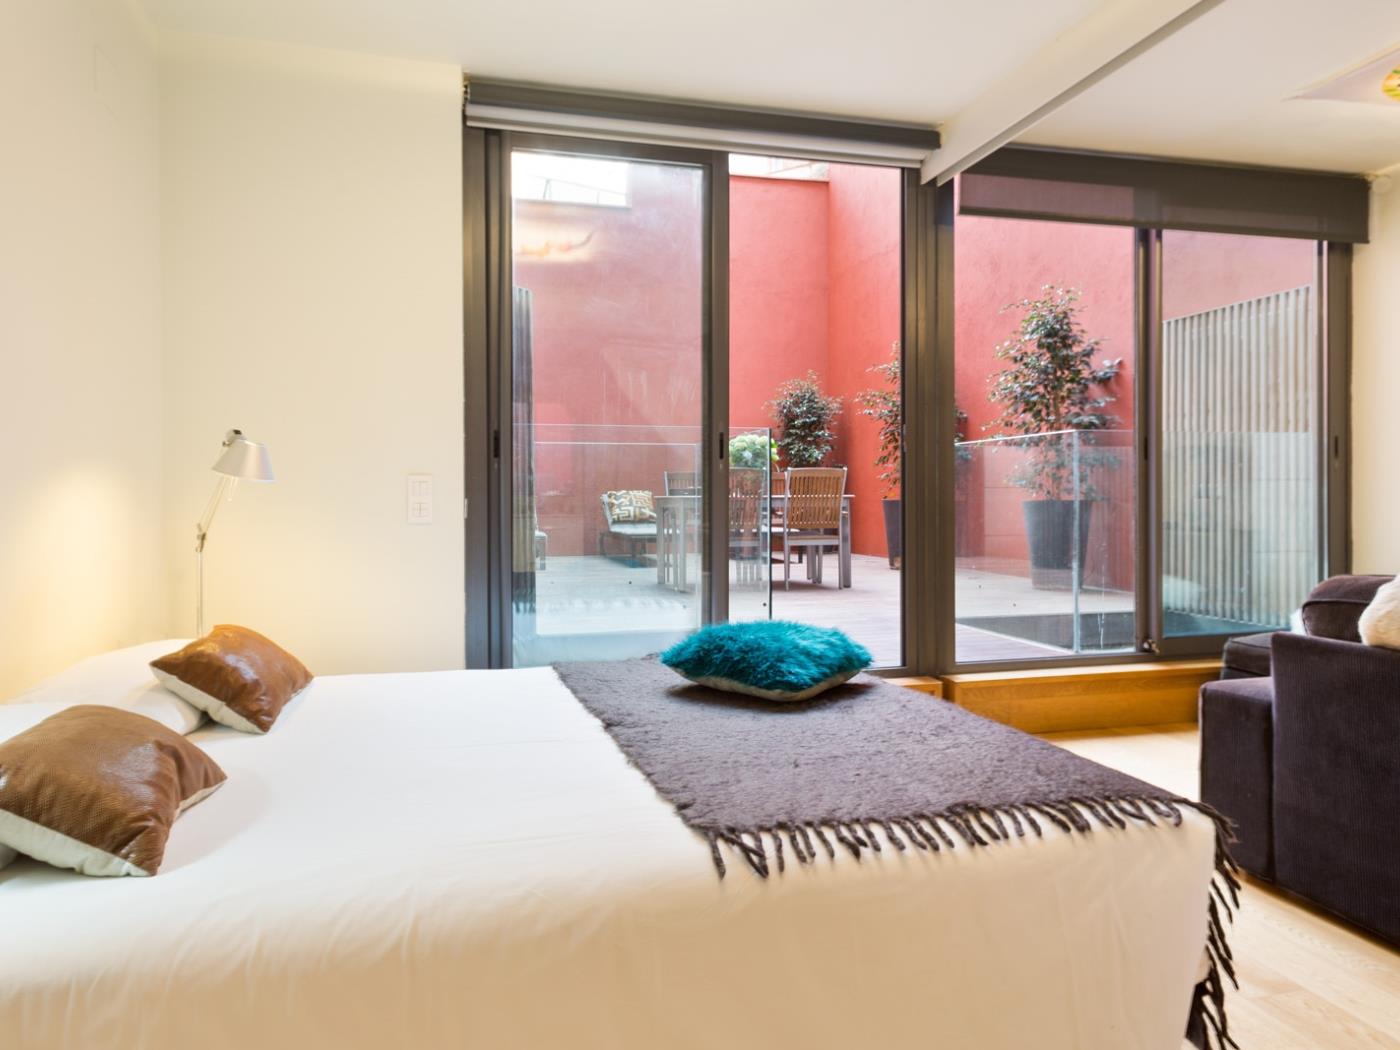 6 apartamentos con terraza y piscina para hasta 48 personas - My Space Barcelona Apartamentos